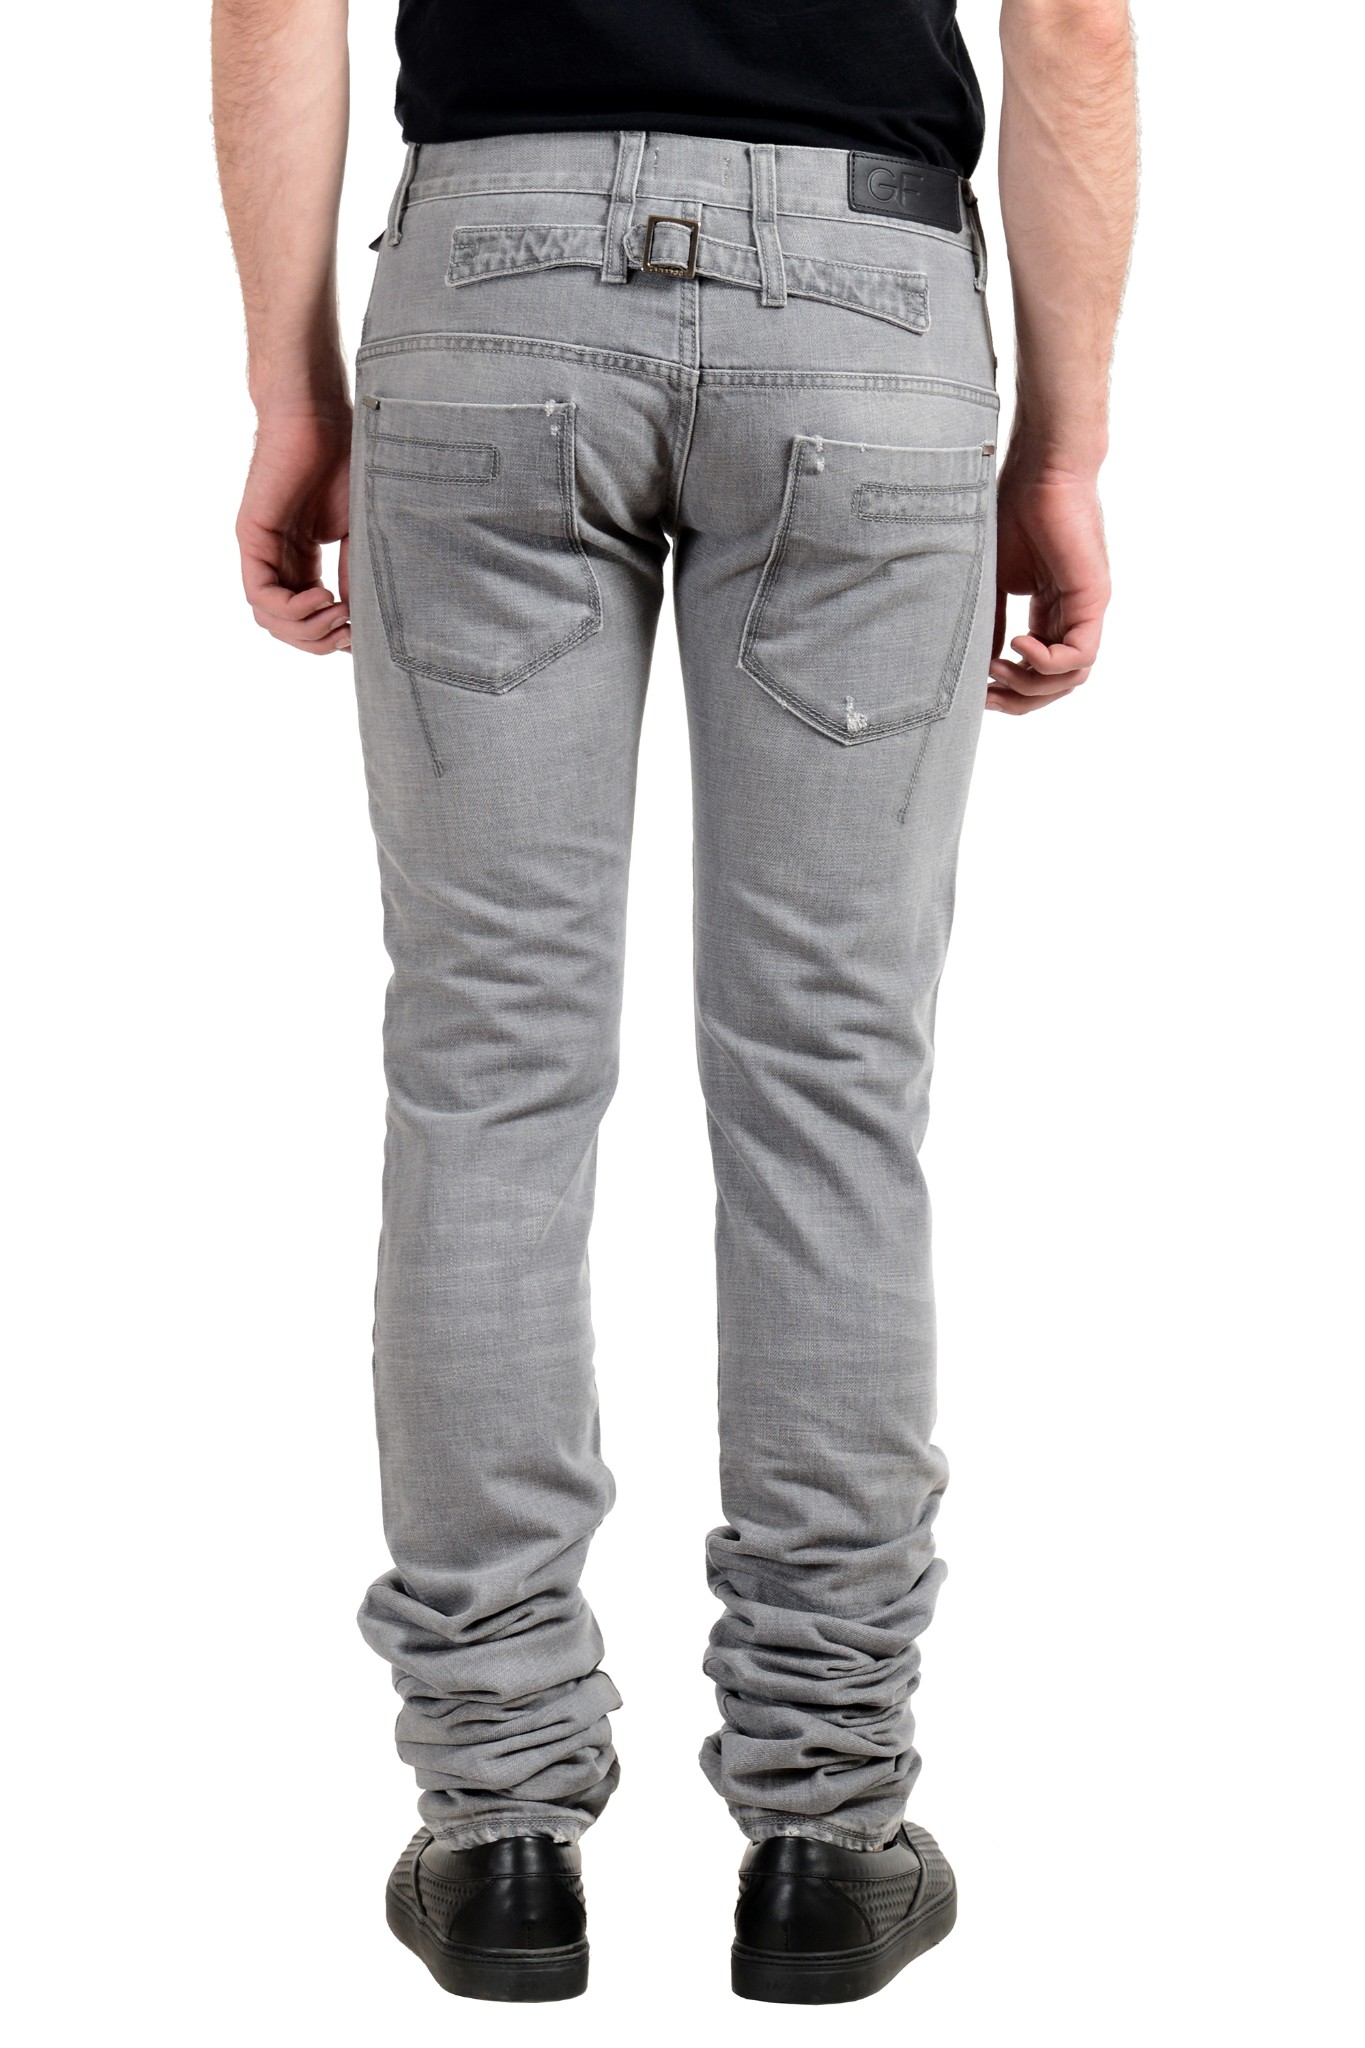 Gianfranco Ferre GF Men's Gray Skinny Jeans | eBay